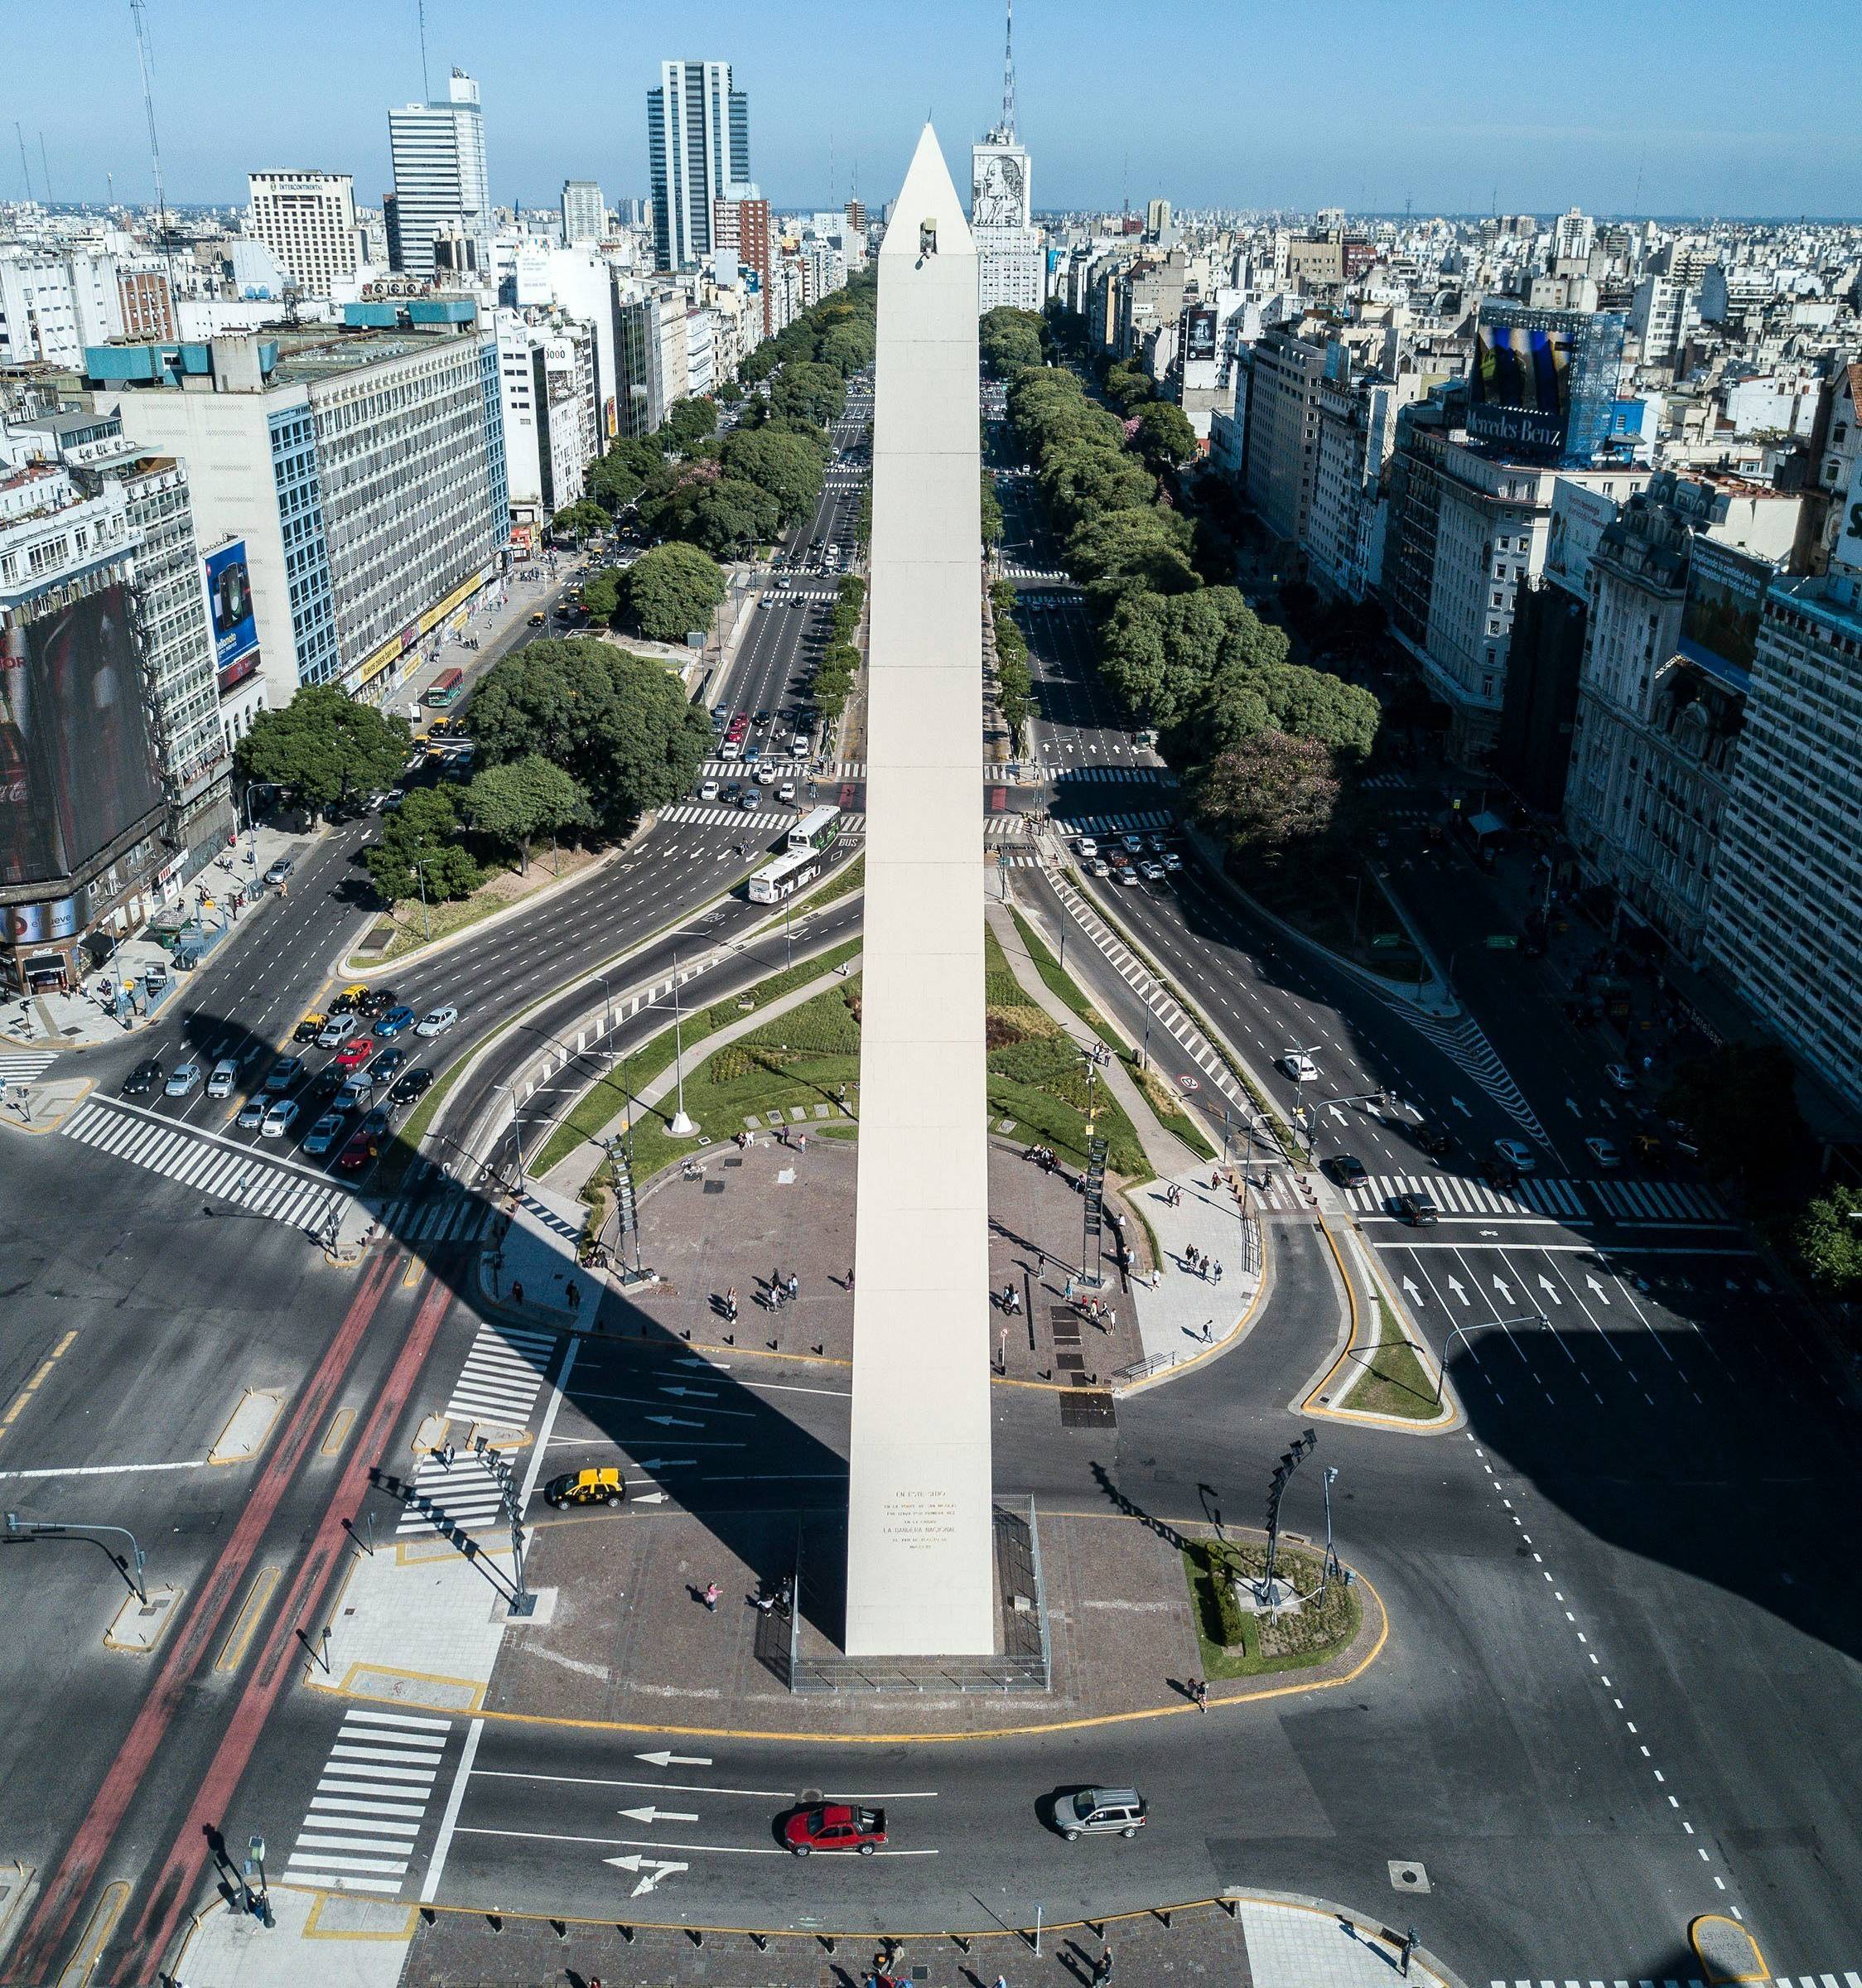 Herzlich willkommen in Buenos Aires